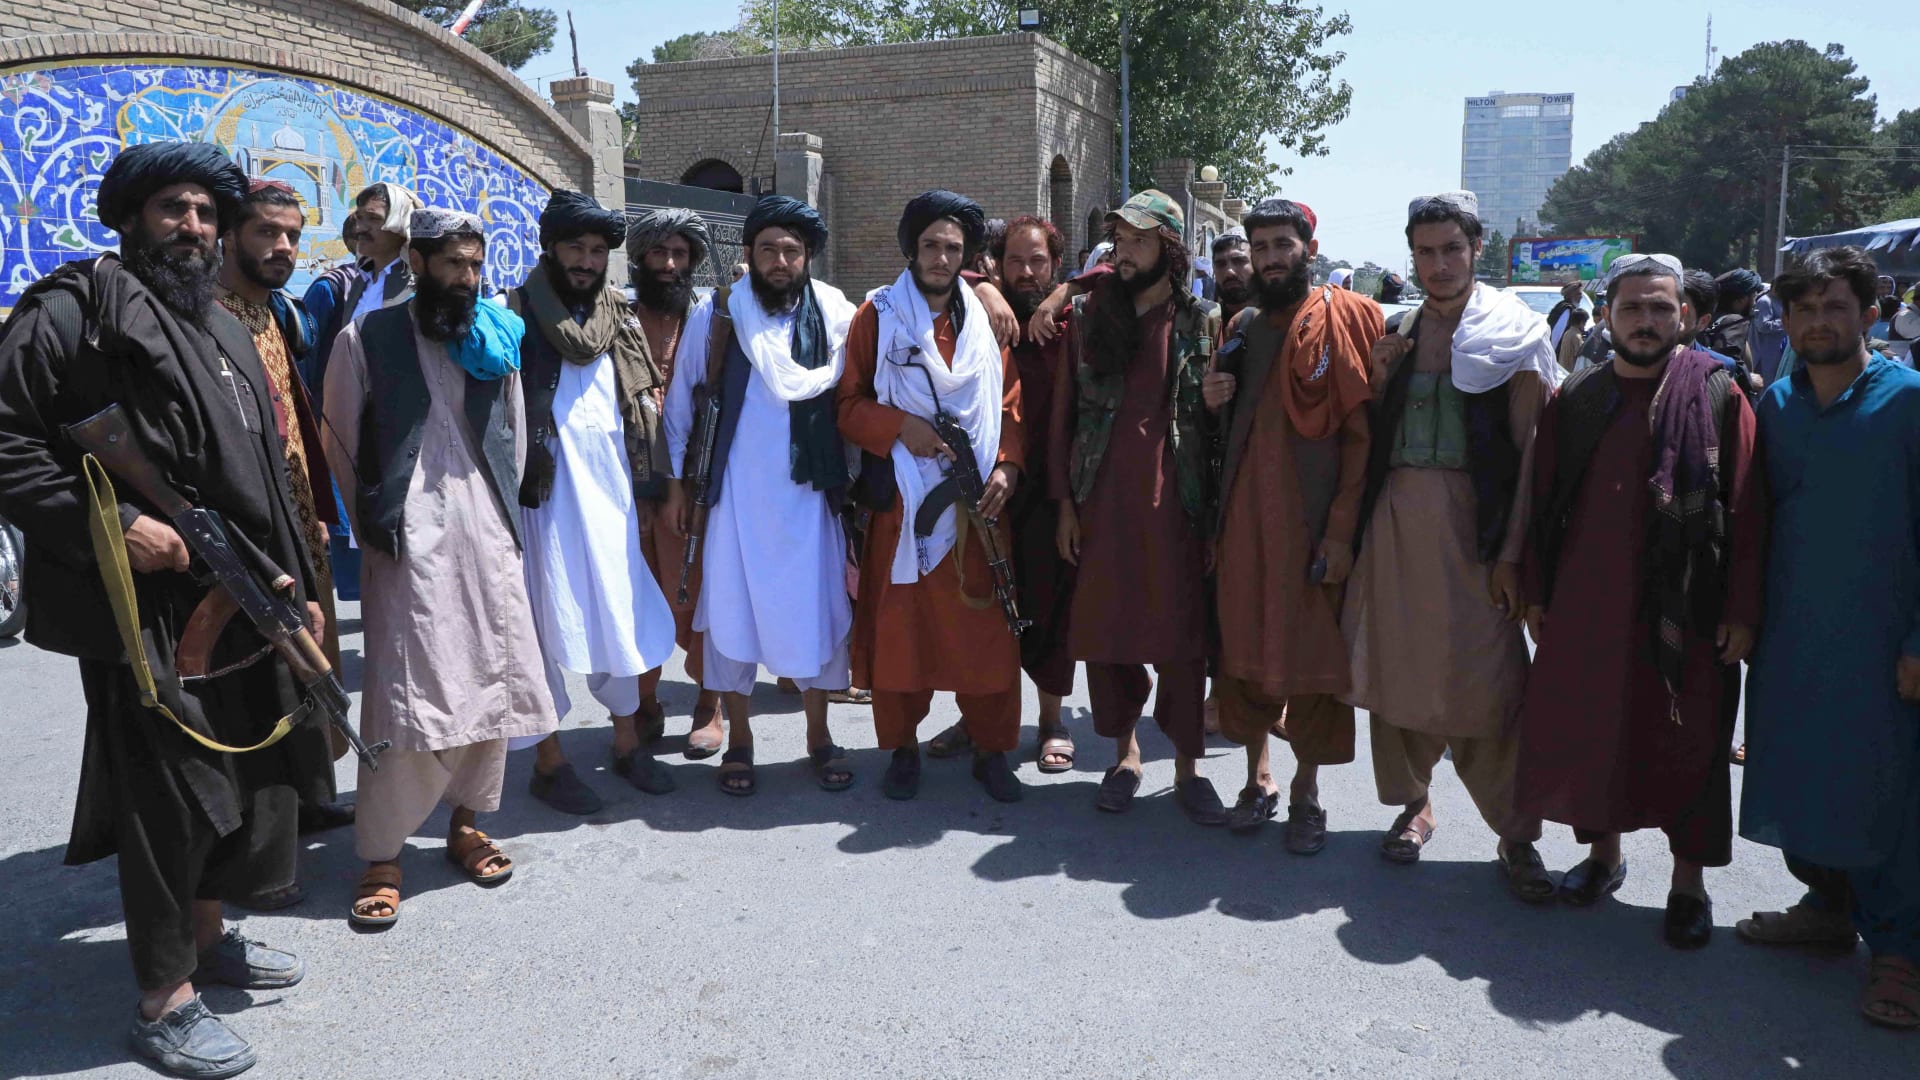 المتحدث باسم طالبان أولوياتنا الحفاظ على الأمن وحكومة إسلامية شاملة